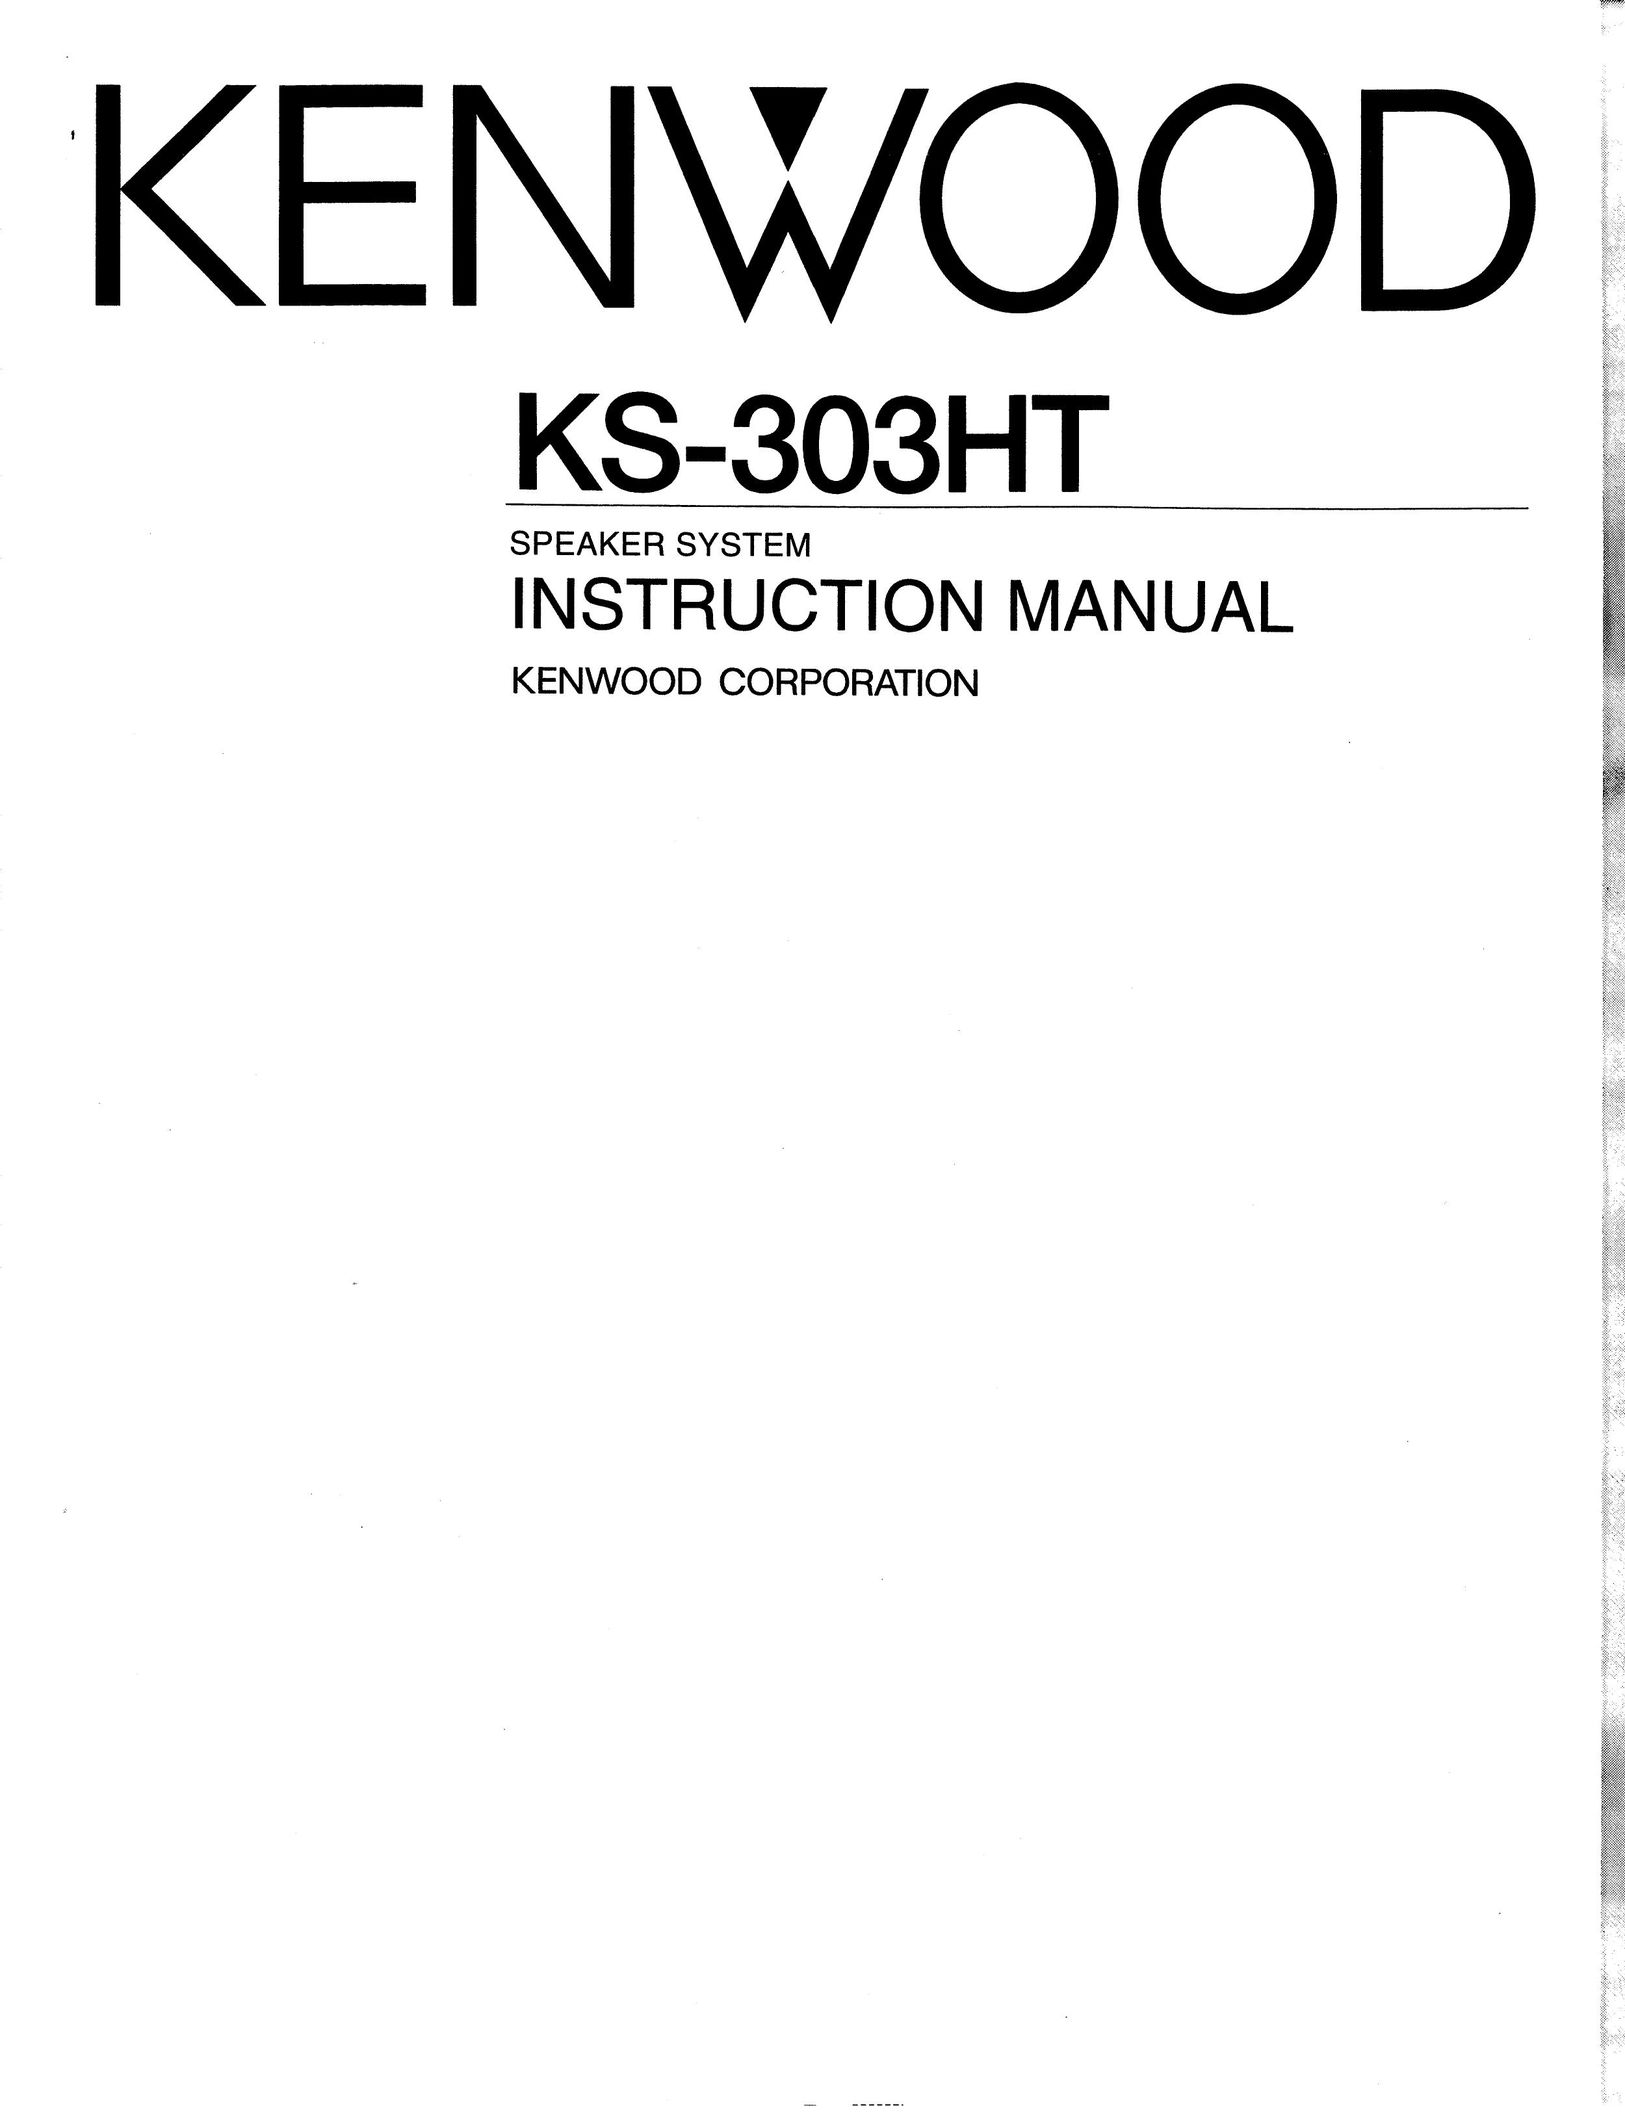 Kenwood KS-303HT Speaker System User Manual